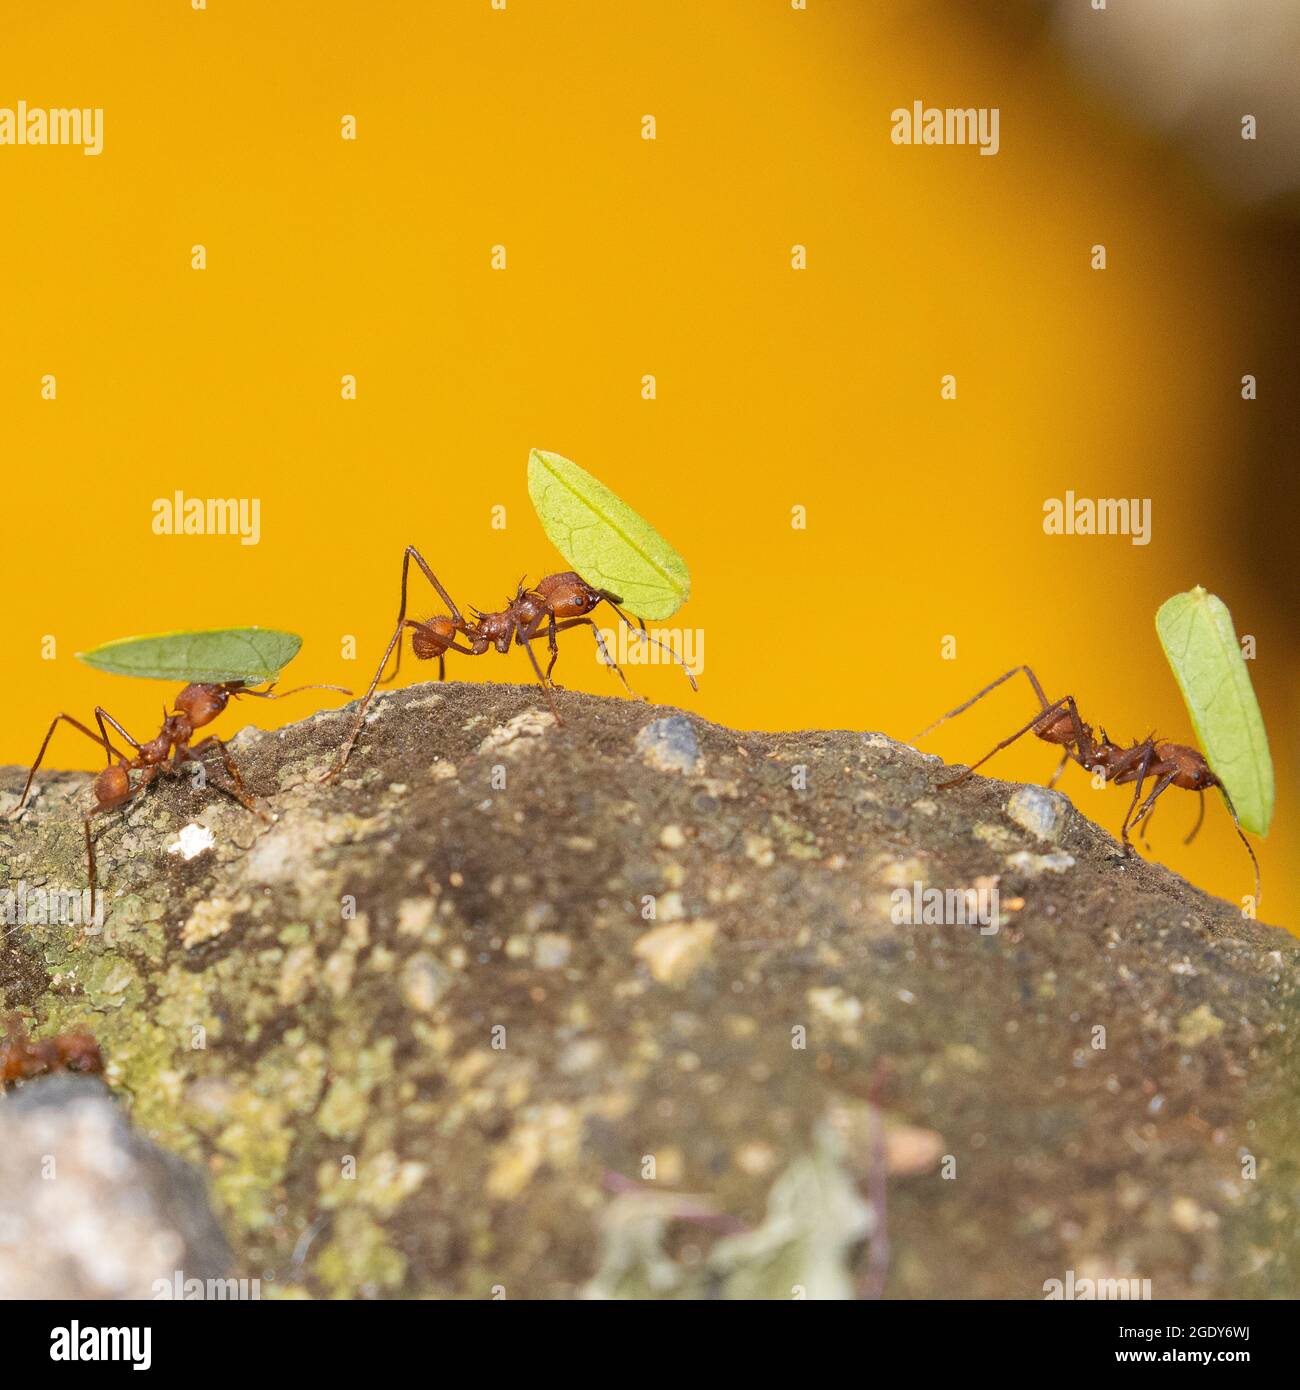 Nahaufnahme der Ants von Leafcutter, die ein Beispiel für ständige Arbeit und Teamarbeit sind. Stockfoto